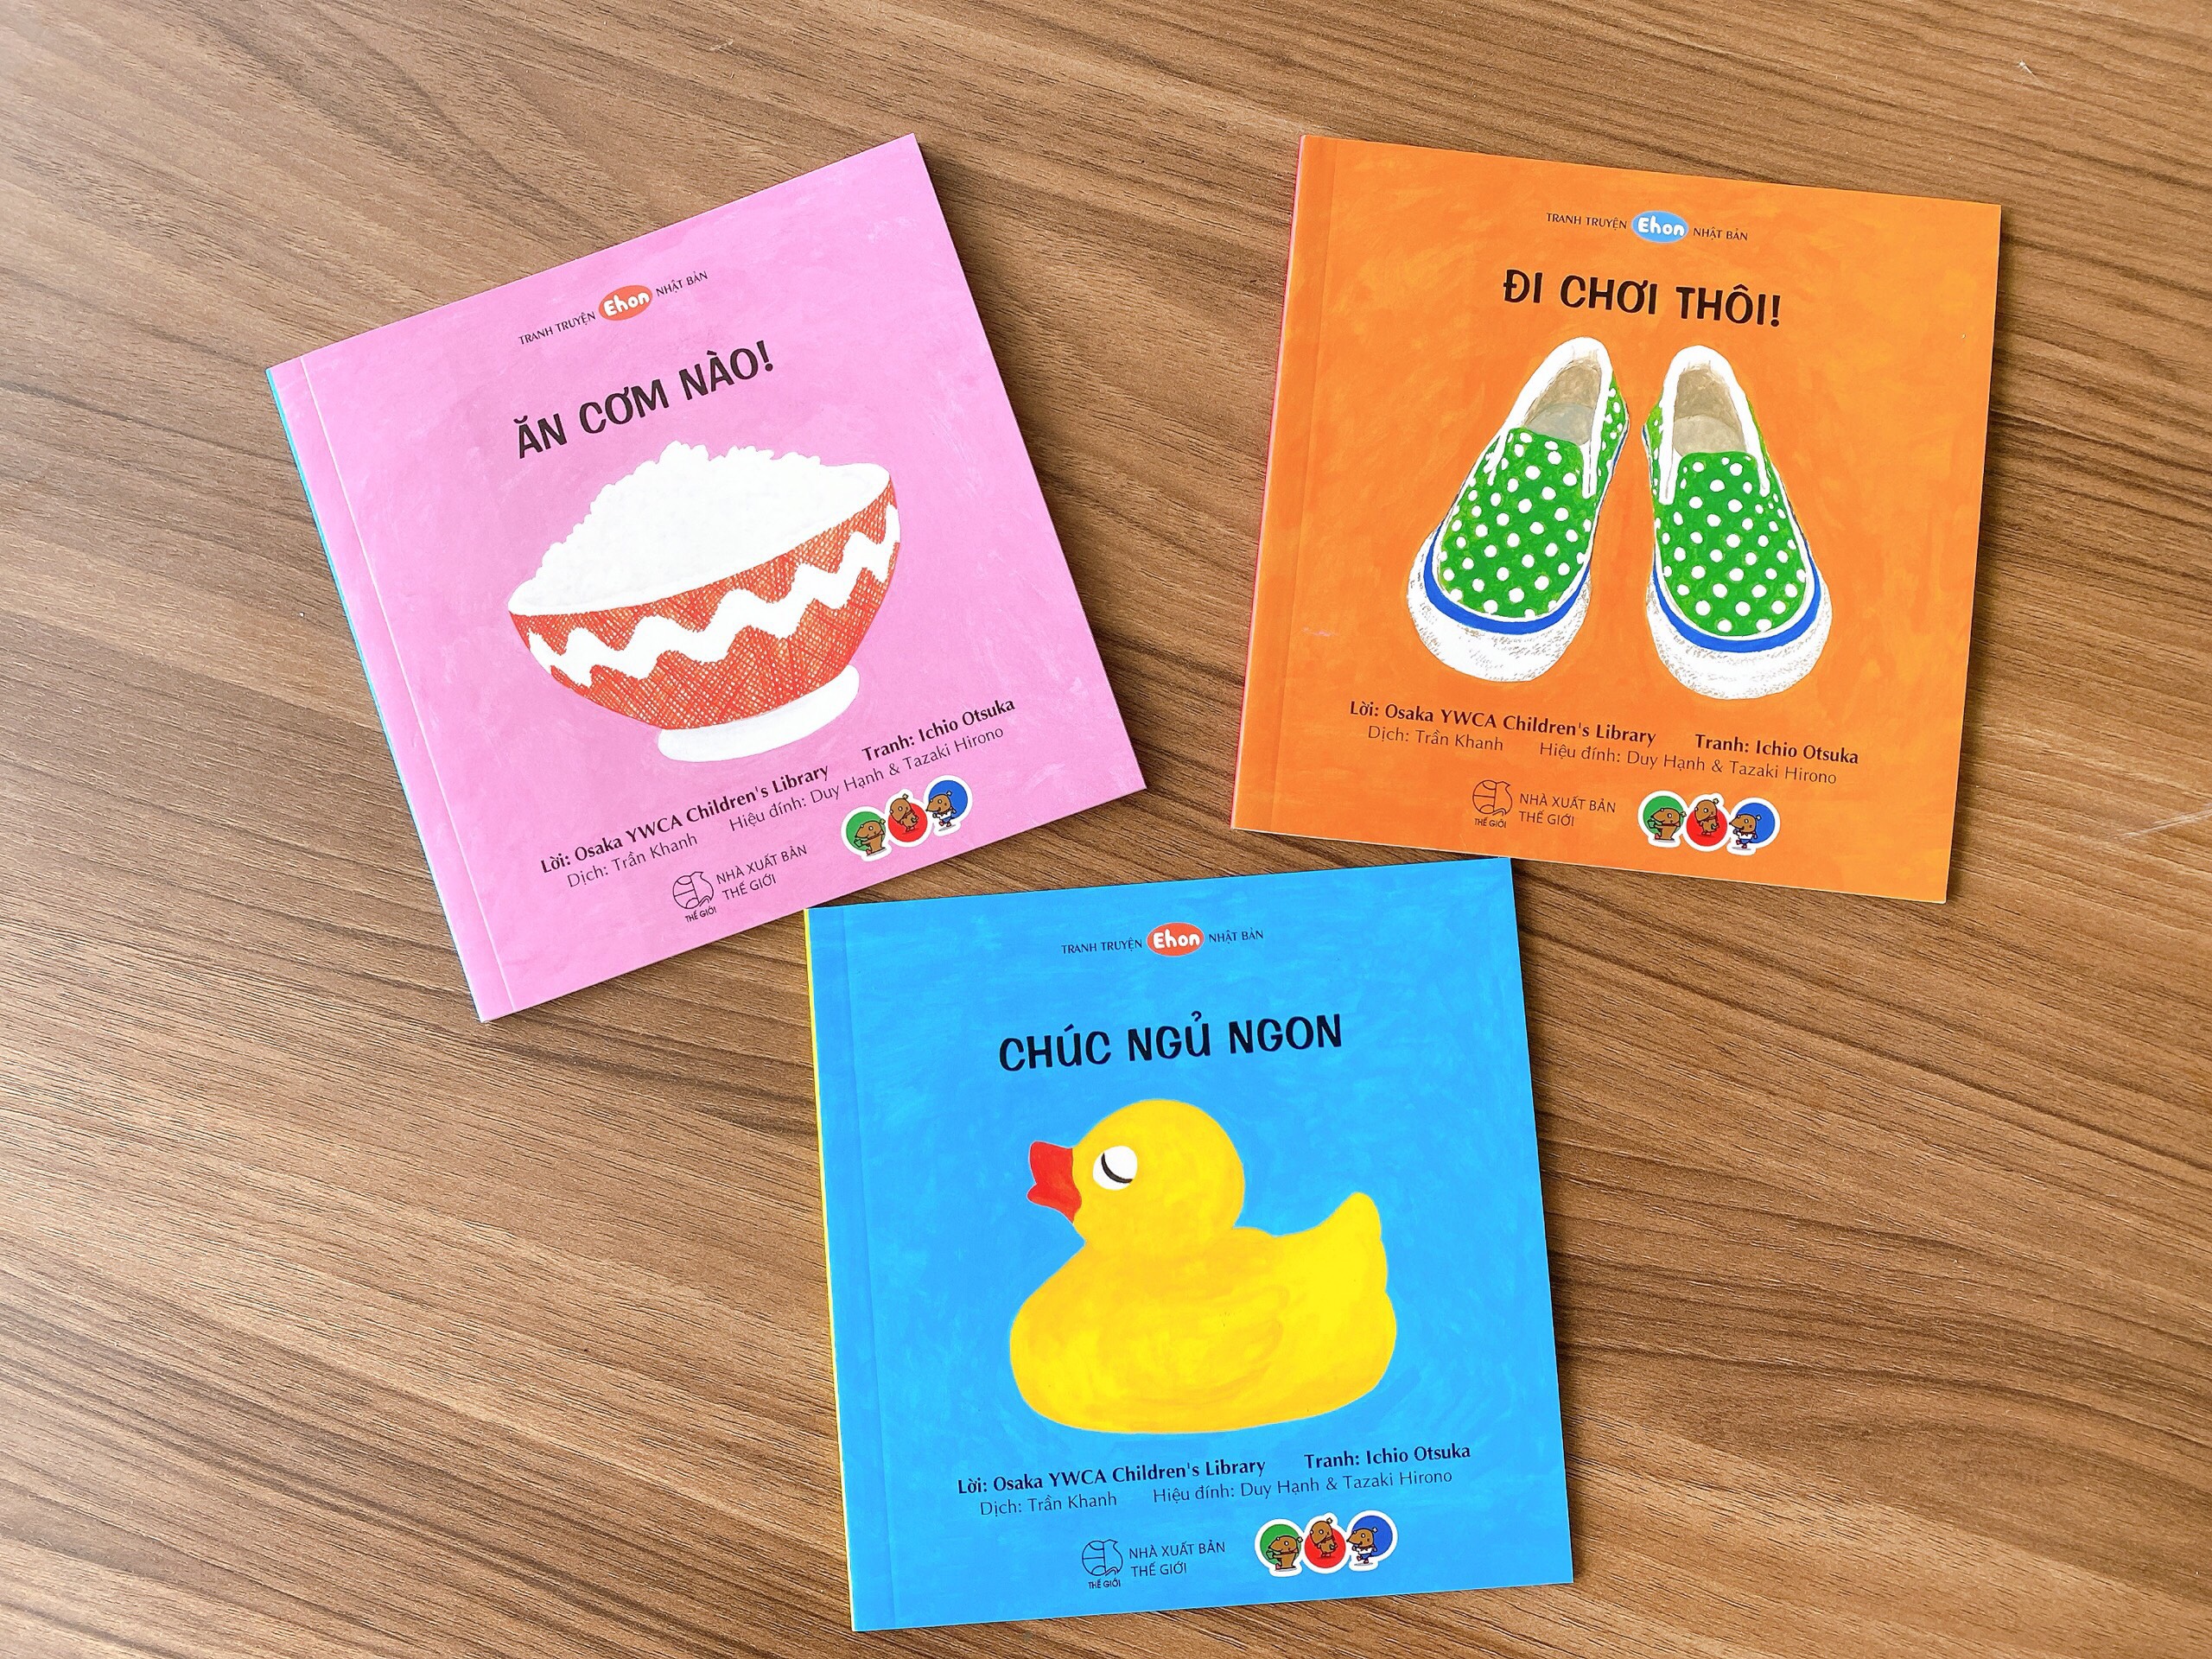 Combo 3 cuốn Ehon cho bé 0-2 tuổi làm quen với sự vật, màu sắc xung quanh, kỹ năng đời sống hằng ngày  - Ăn cơm thôi - Đi chơi nào - Chúc ngủ ngon - Mọt sách Mogu